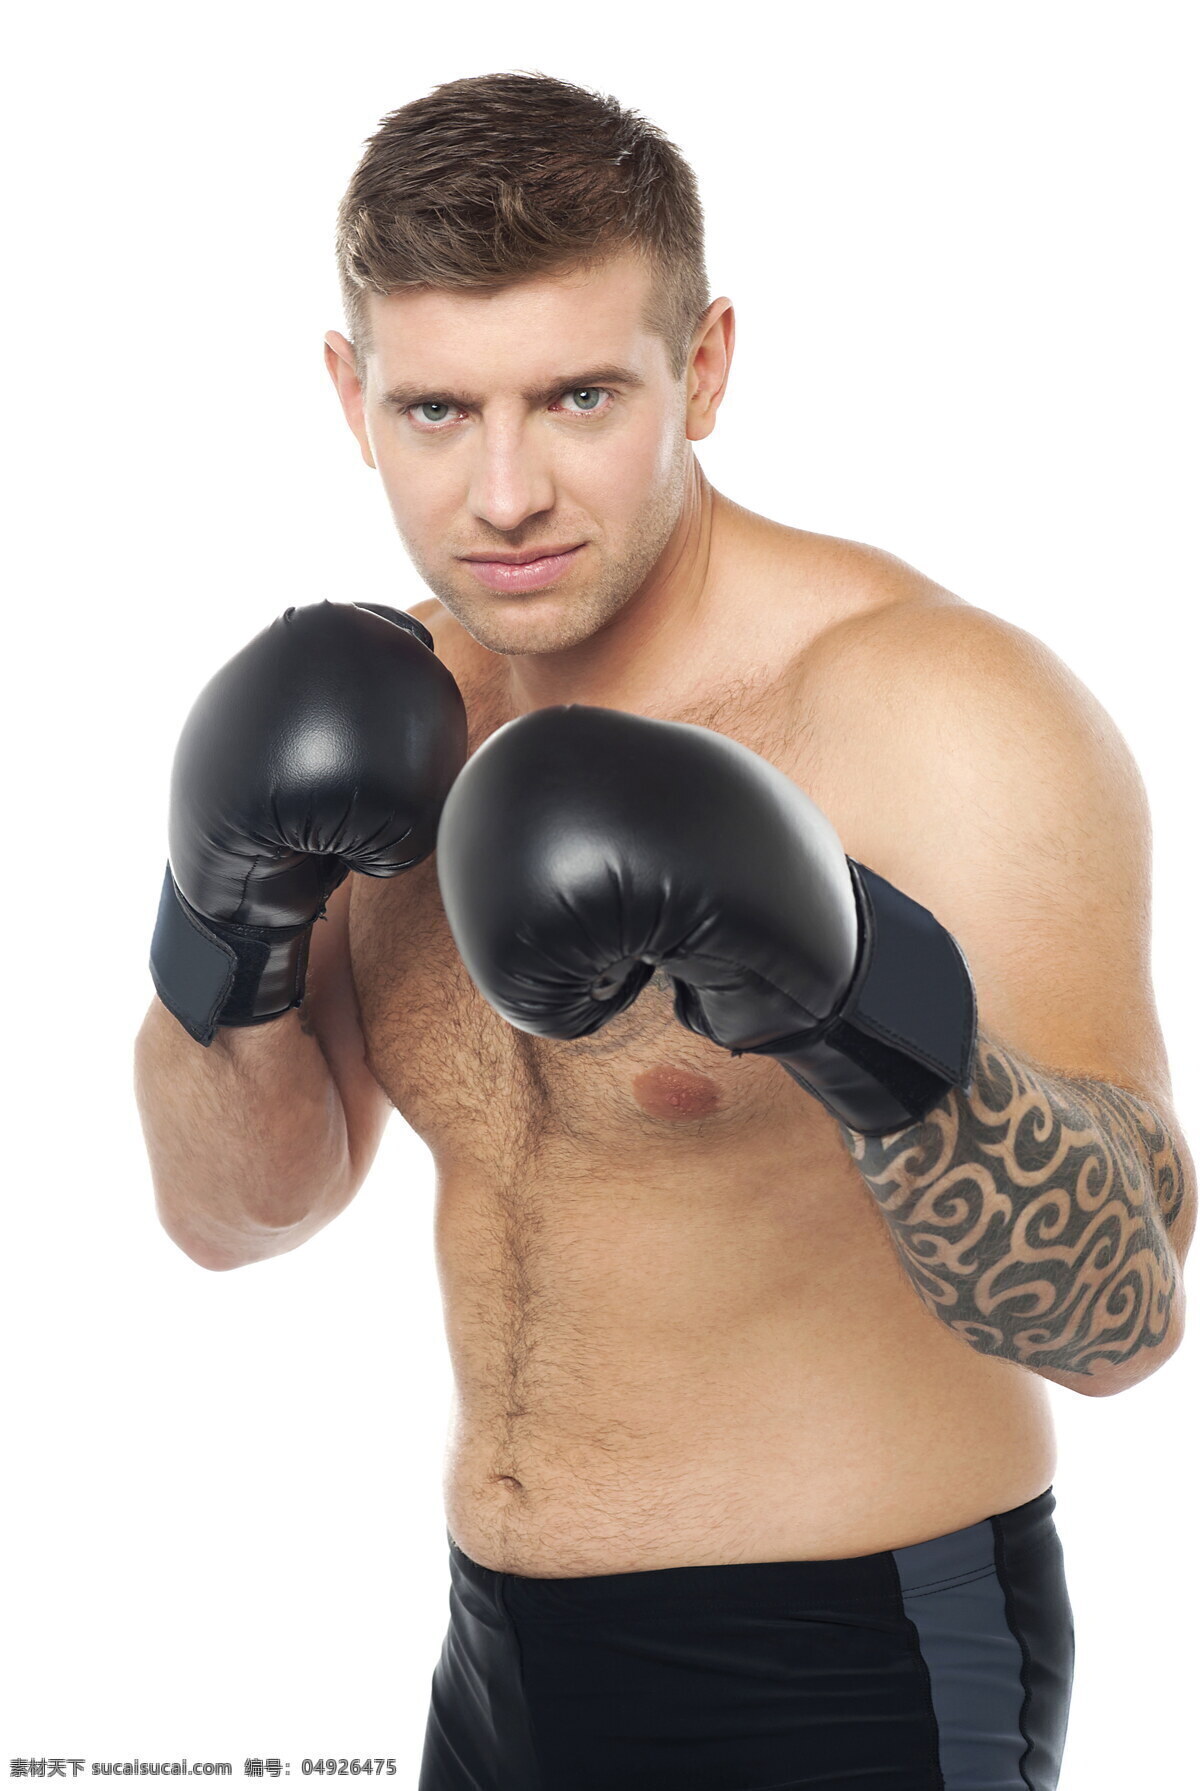 打拳 击 男人 打拳击 黑色拳击手套 纹身 动作 姿势 肌肉 健壮 锻炼 健身 运动 健美 外国男人 生活人物 人物图片